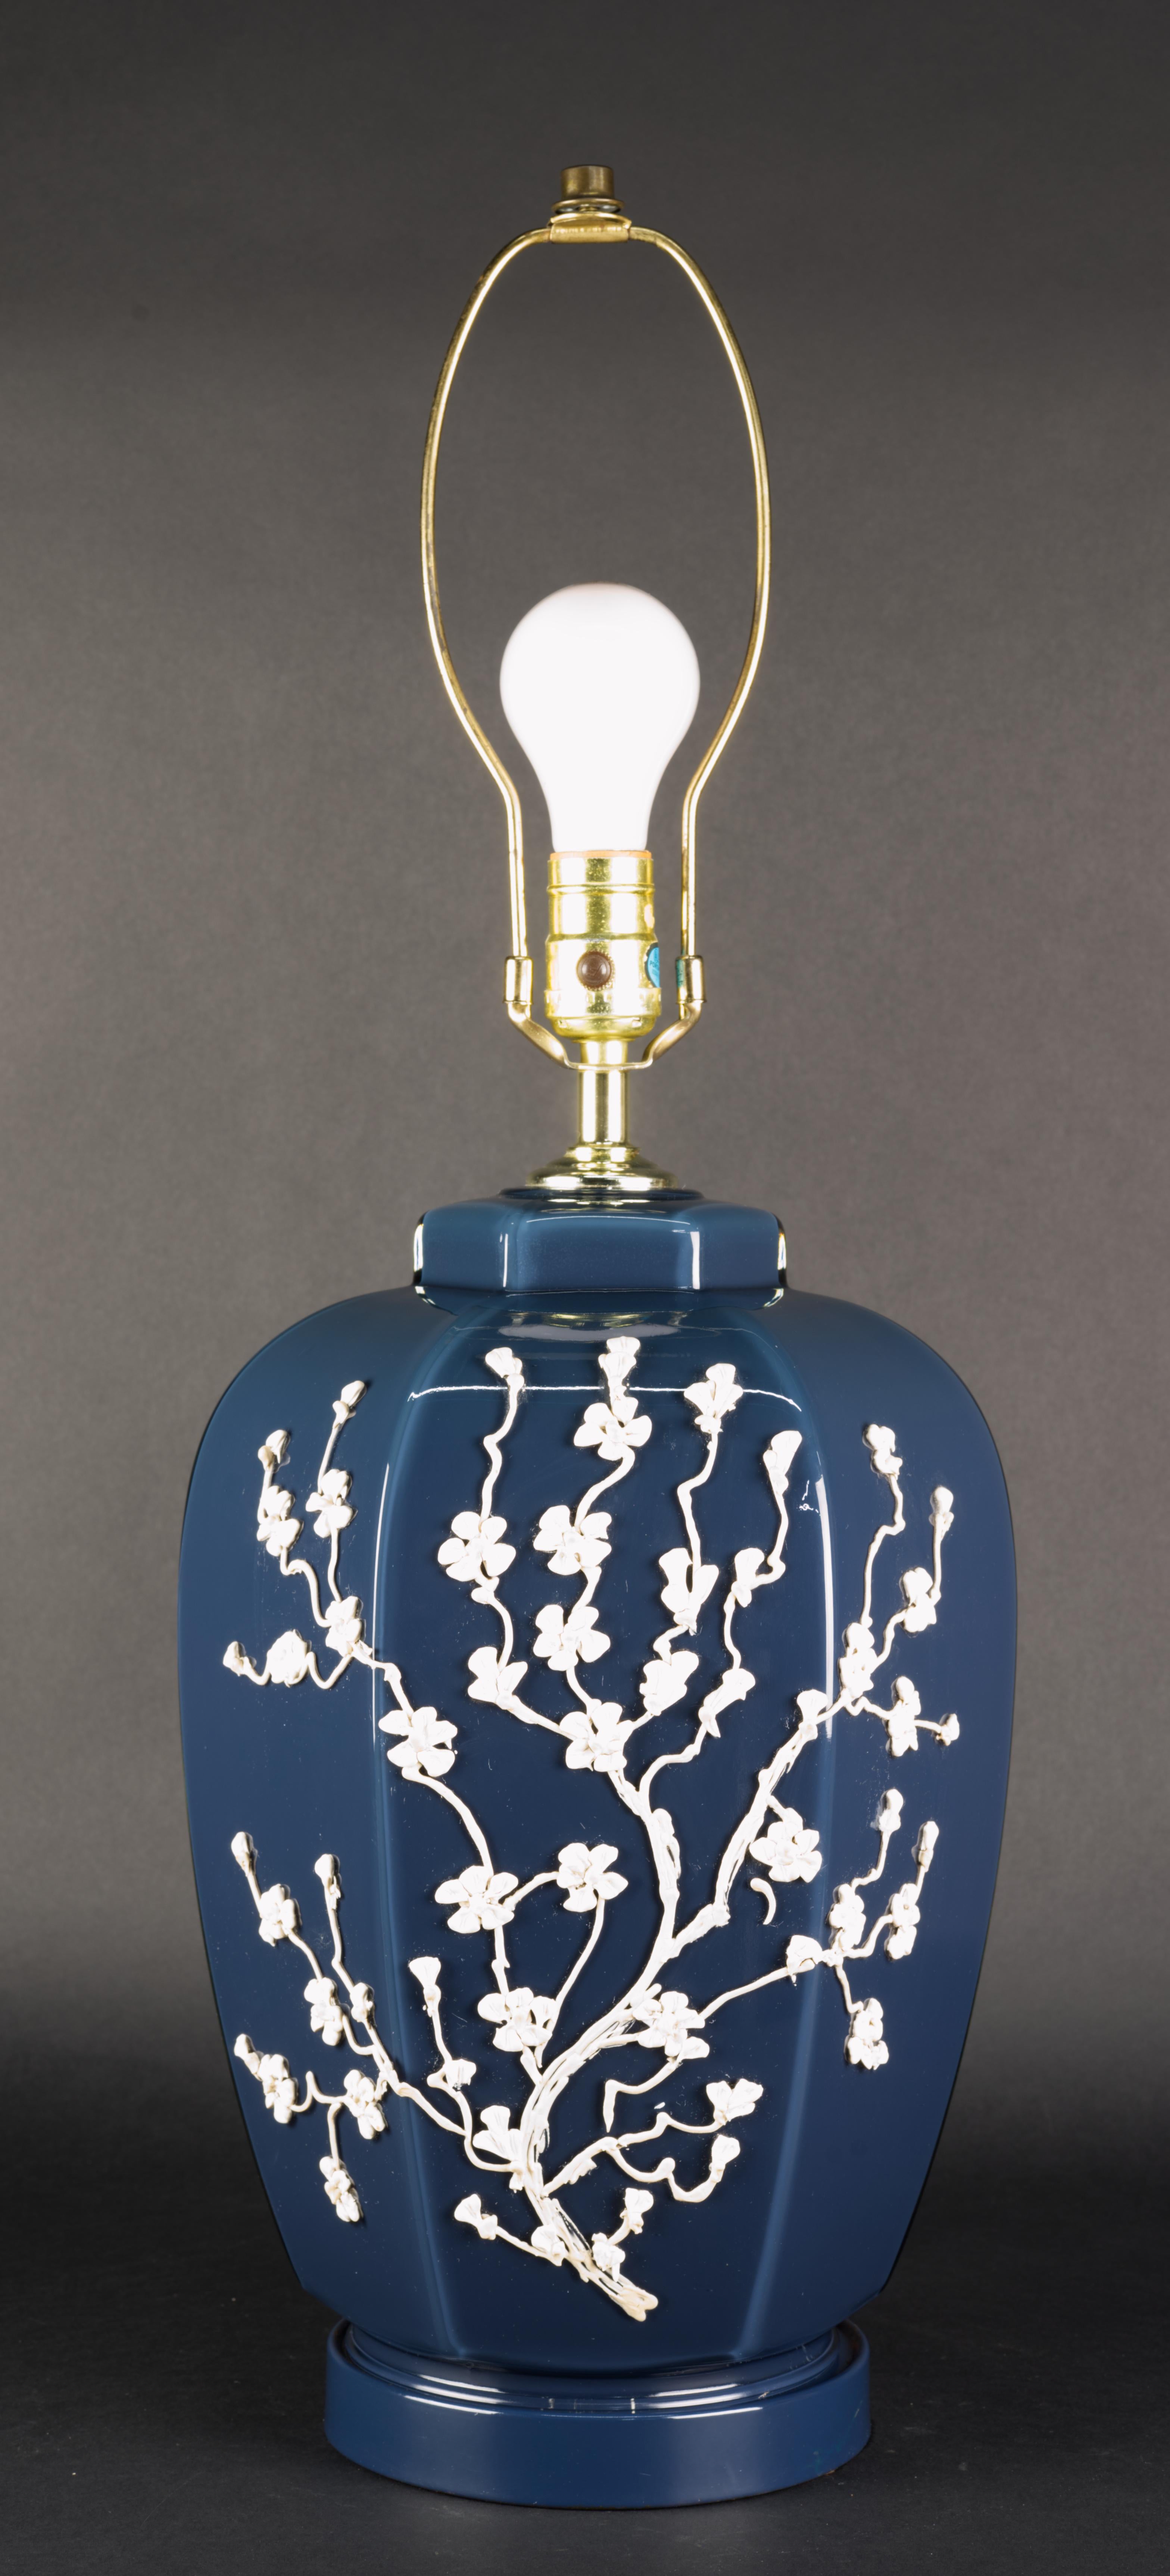  Rare lampe de table postmoderne décorée de branches fleuries blanches sur un corps en verre bleu foncé. La lampe repose sur un socle en métal émaillé assorti à la couleur du verre, créant ainsi une continuité visuelle.
La prise est à trois